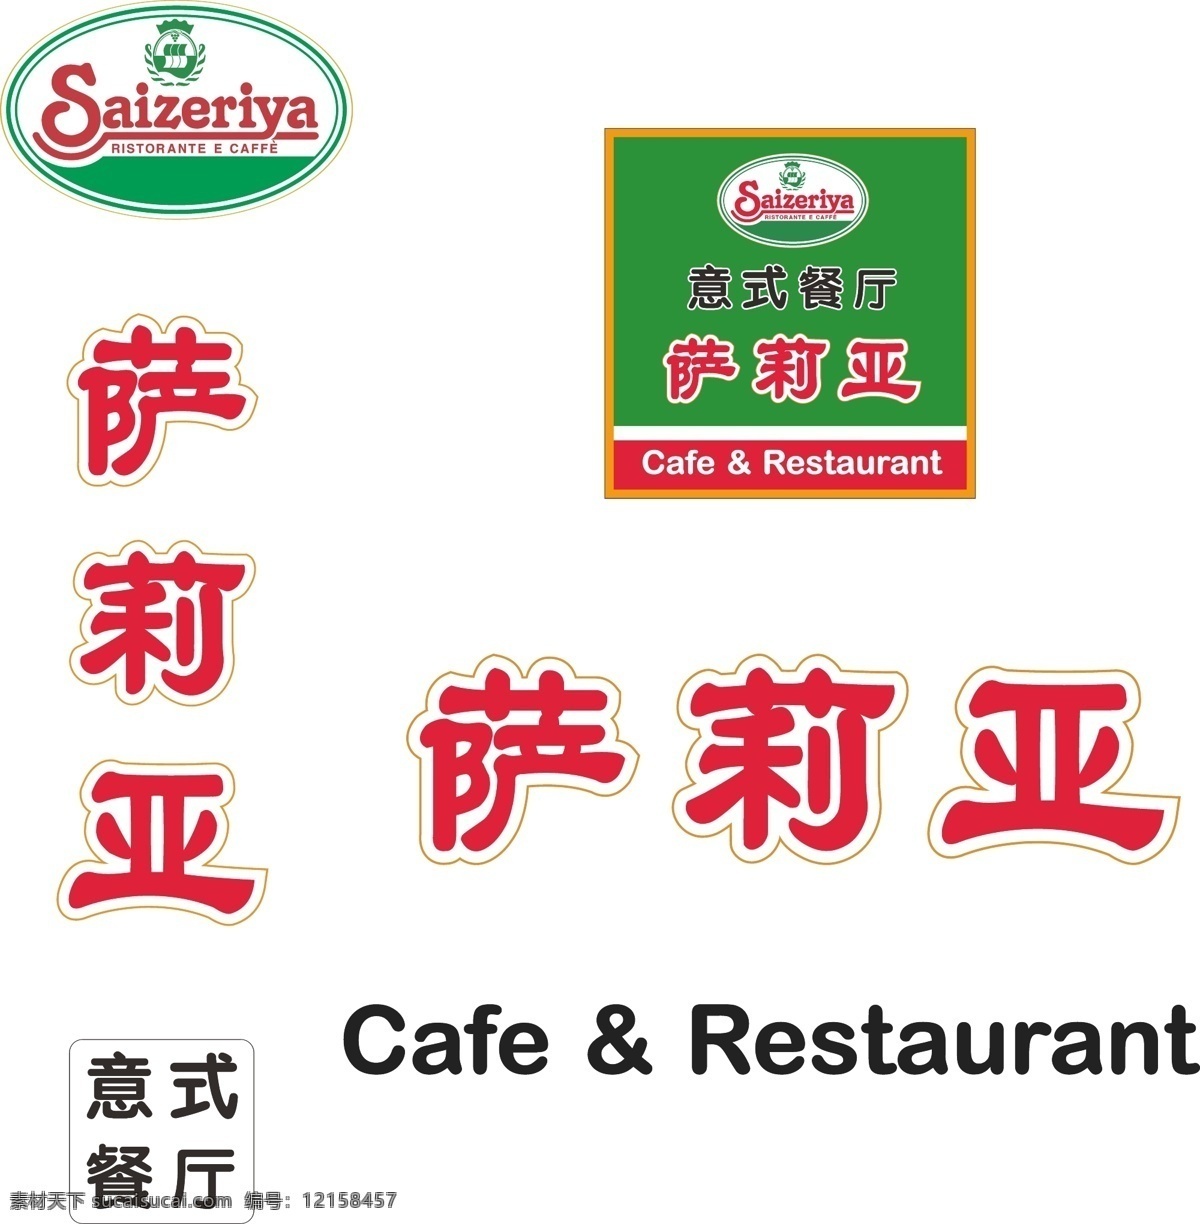 萨莉 亚 logo 商标 标识 品牌 萨莉亚 意式餐厅 品牌logo 企业 标志 标识标志图标 矢量